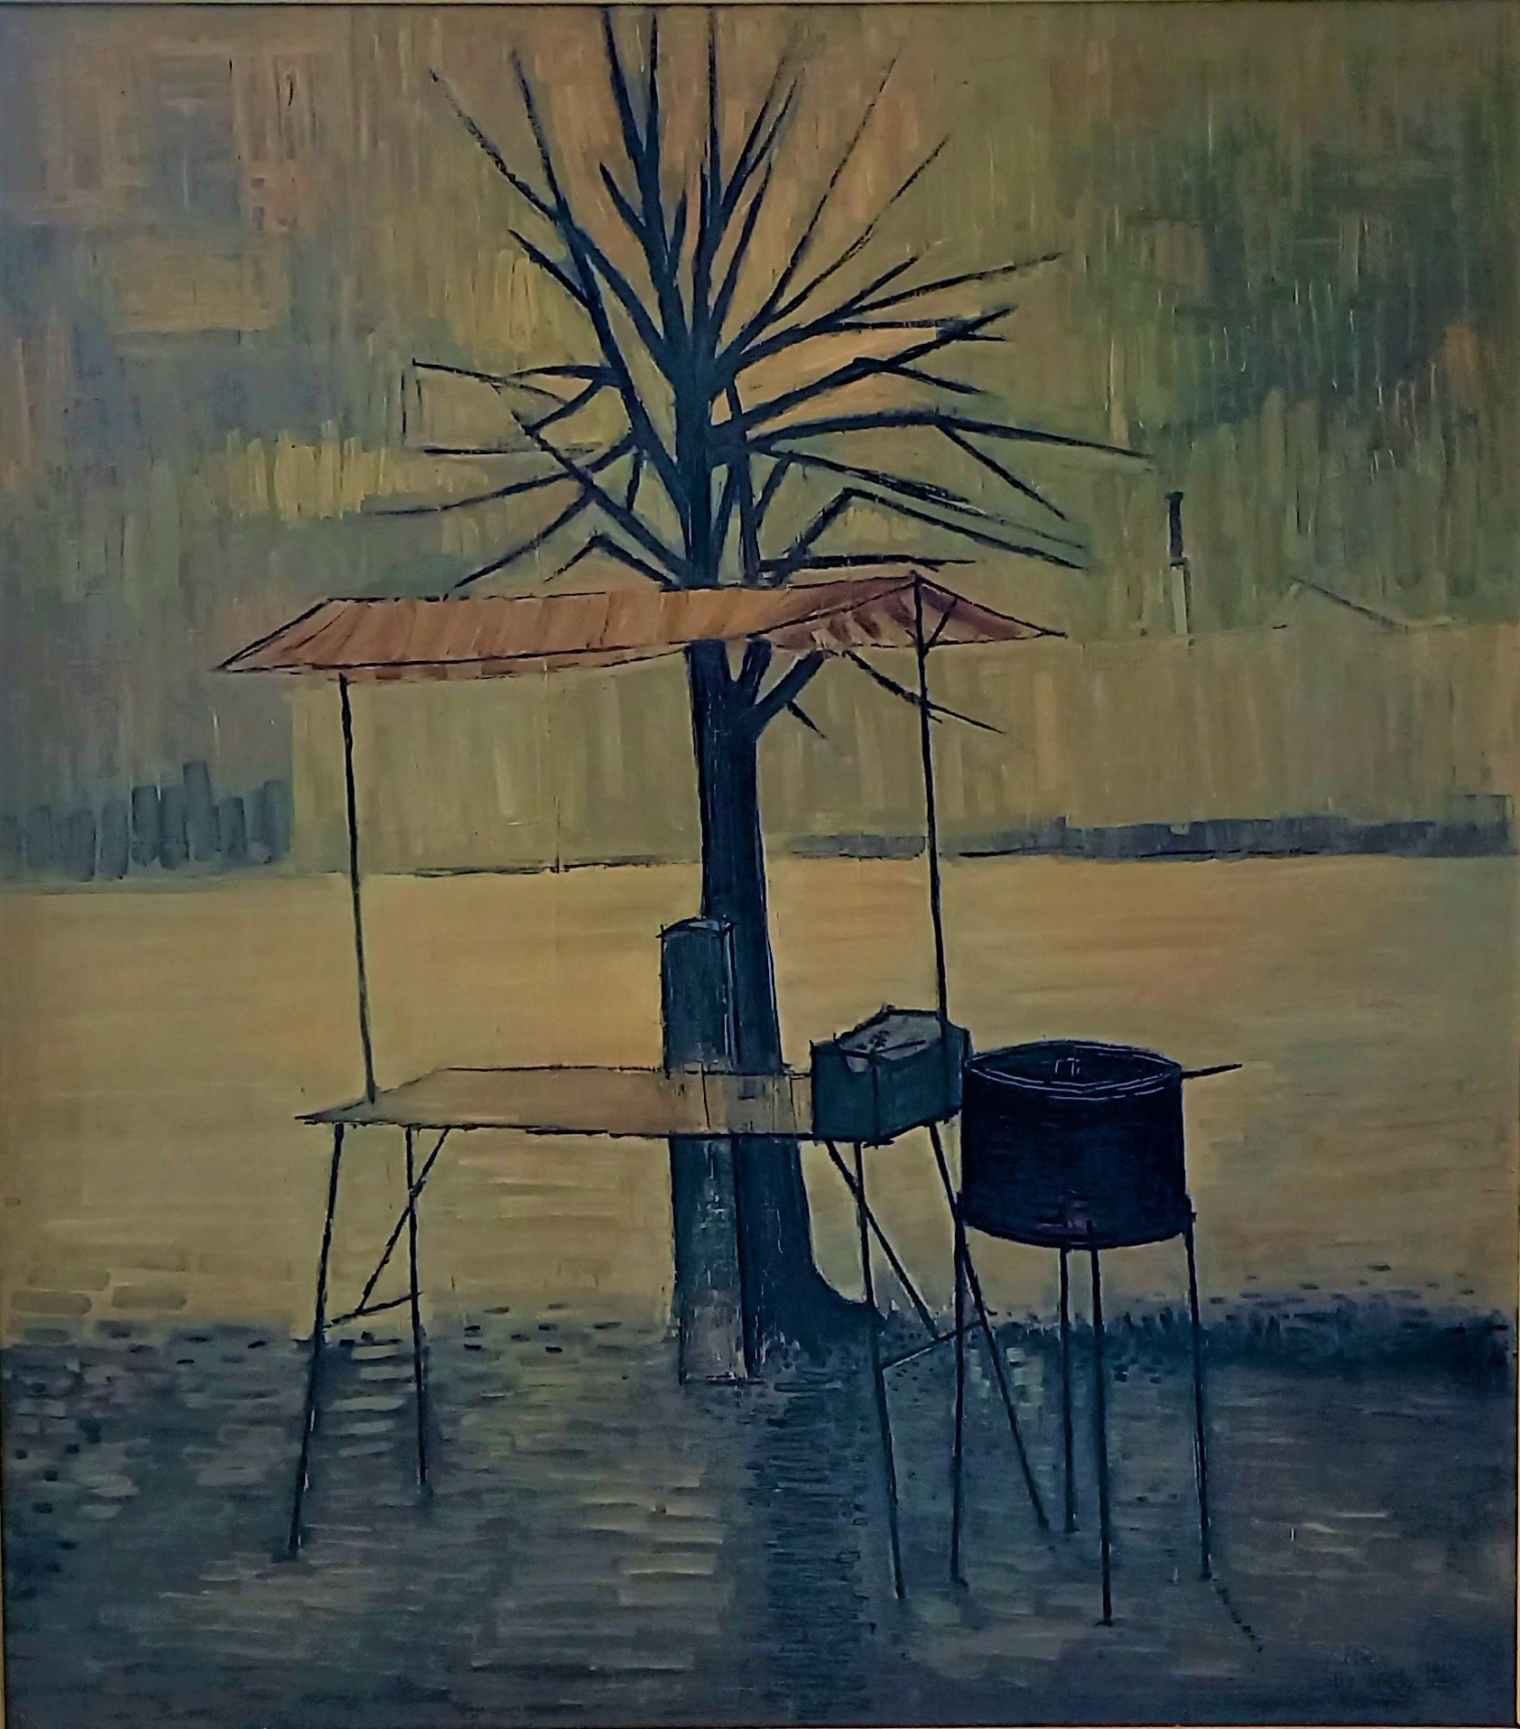 Edwin Lipburger (1928 – 2015), Maroniständchen, 1960, Öl auf Leinwand, 90 x 79 cm